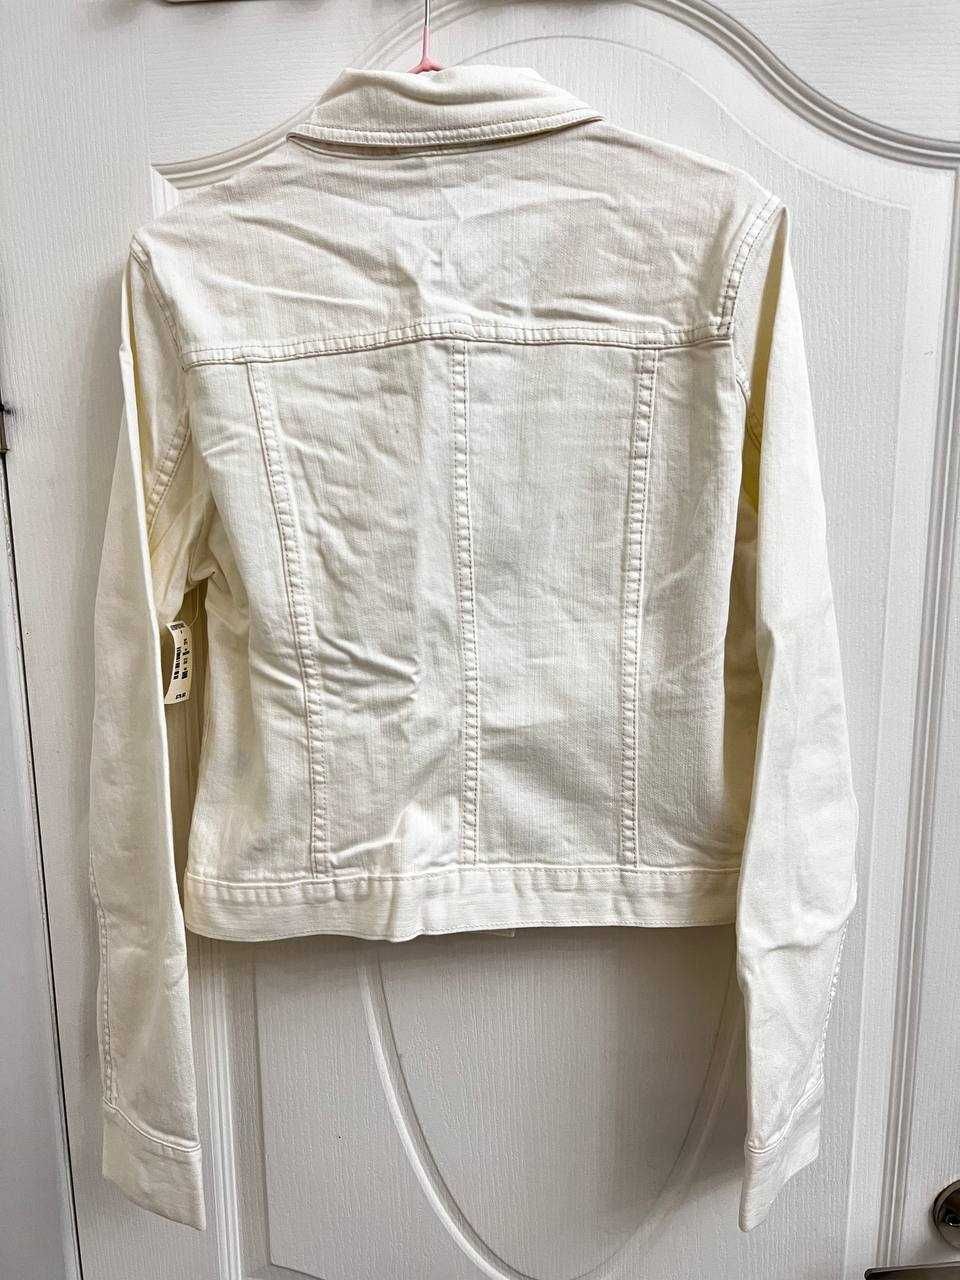 Новая белая джинсовая куртка Aeropostale (США), размер XL (48/52)